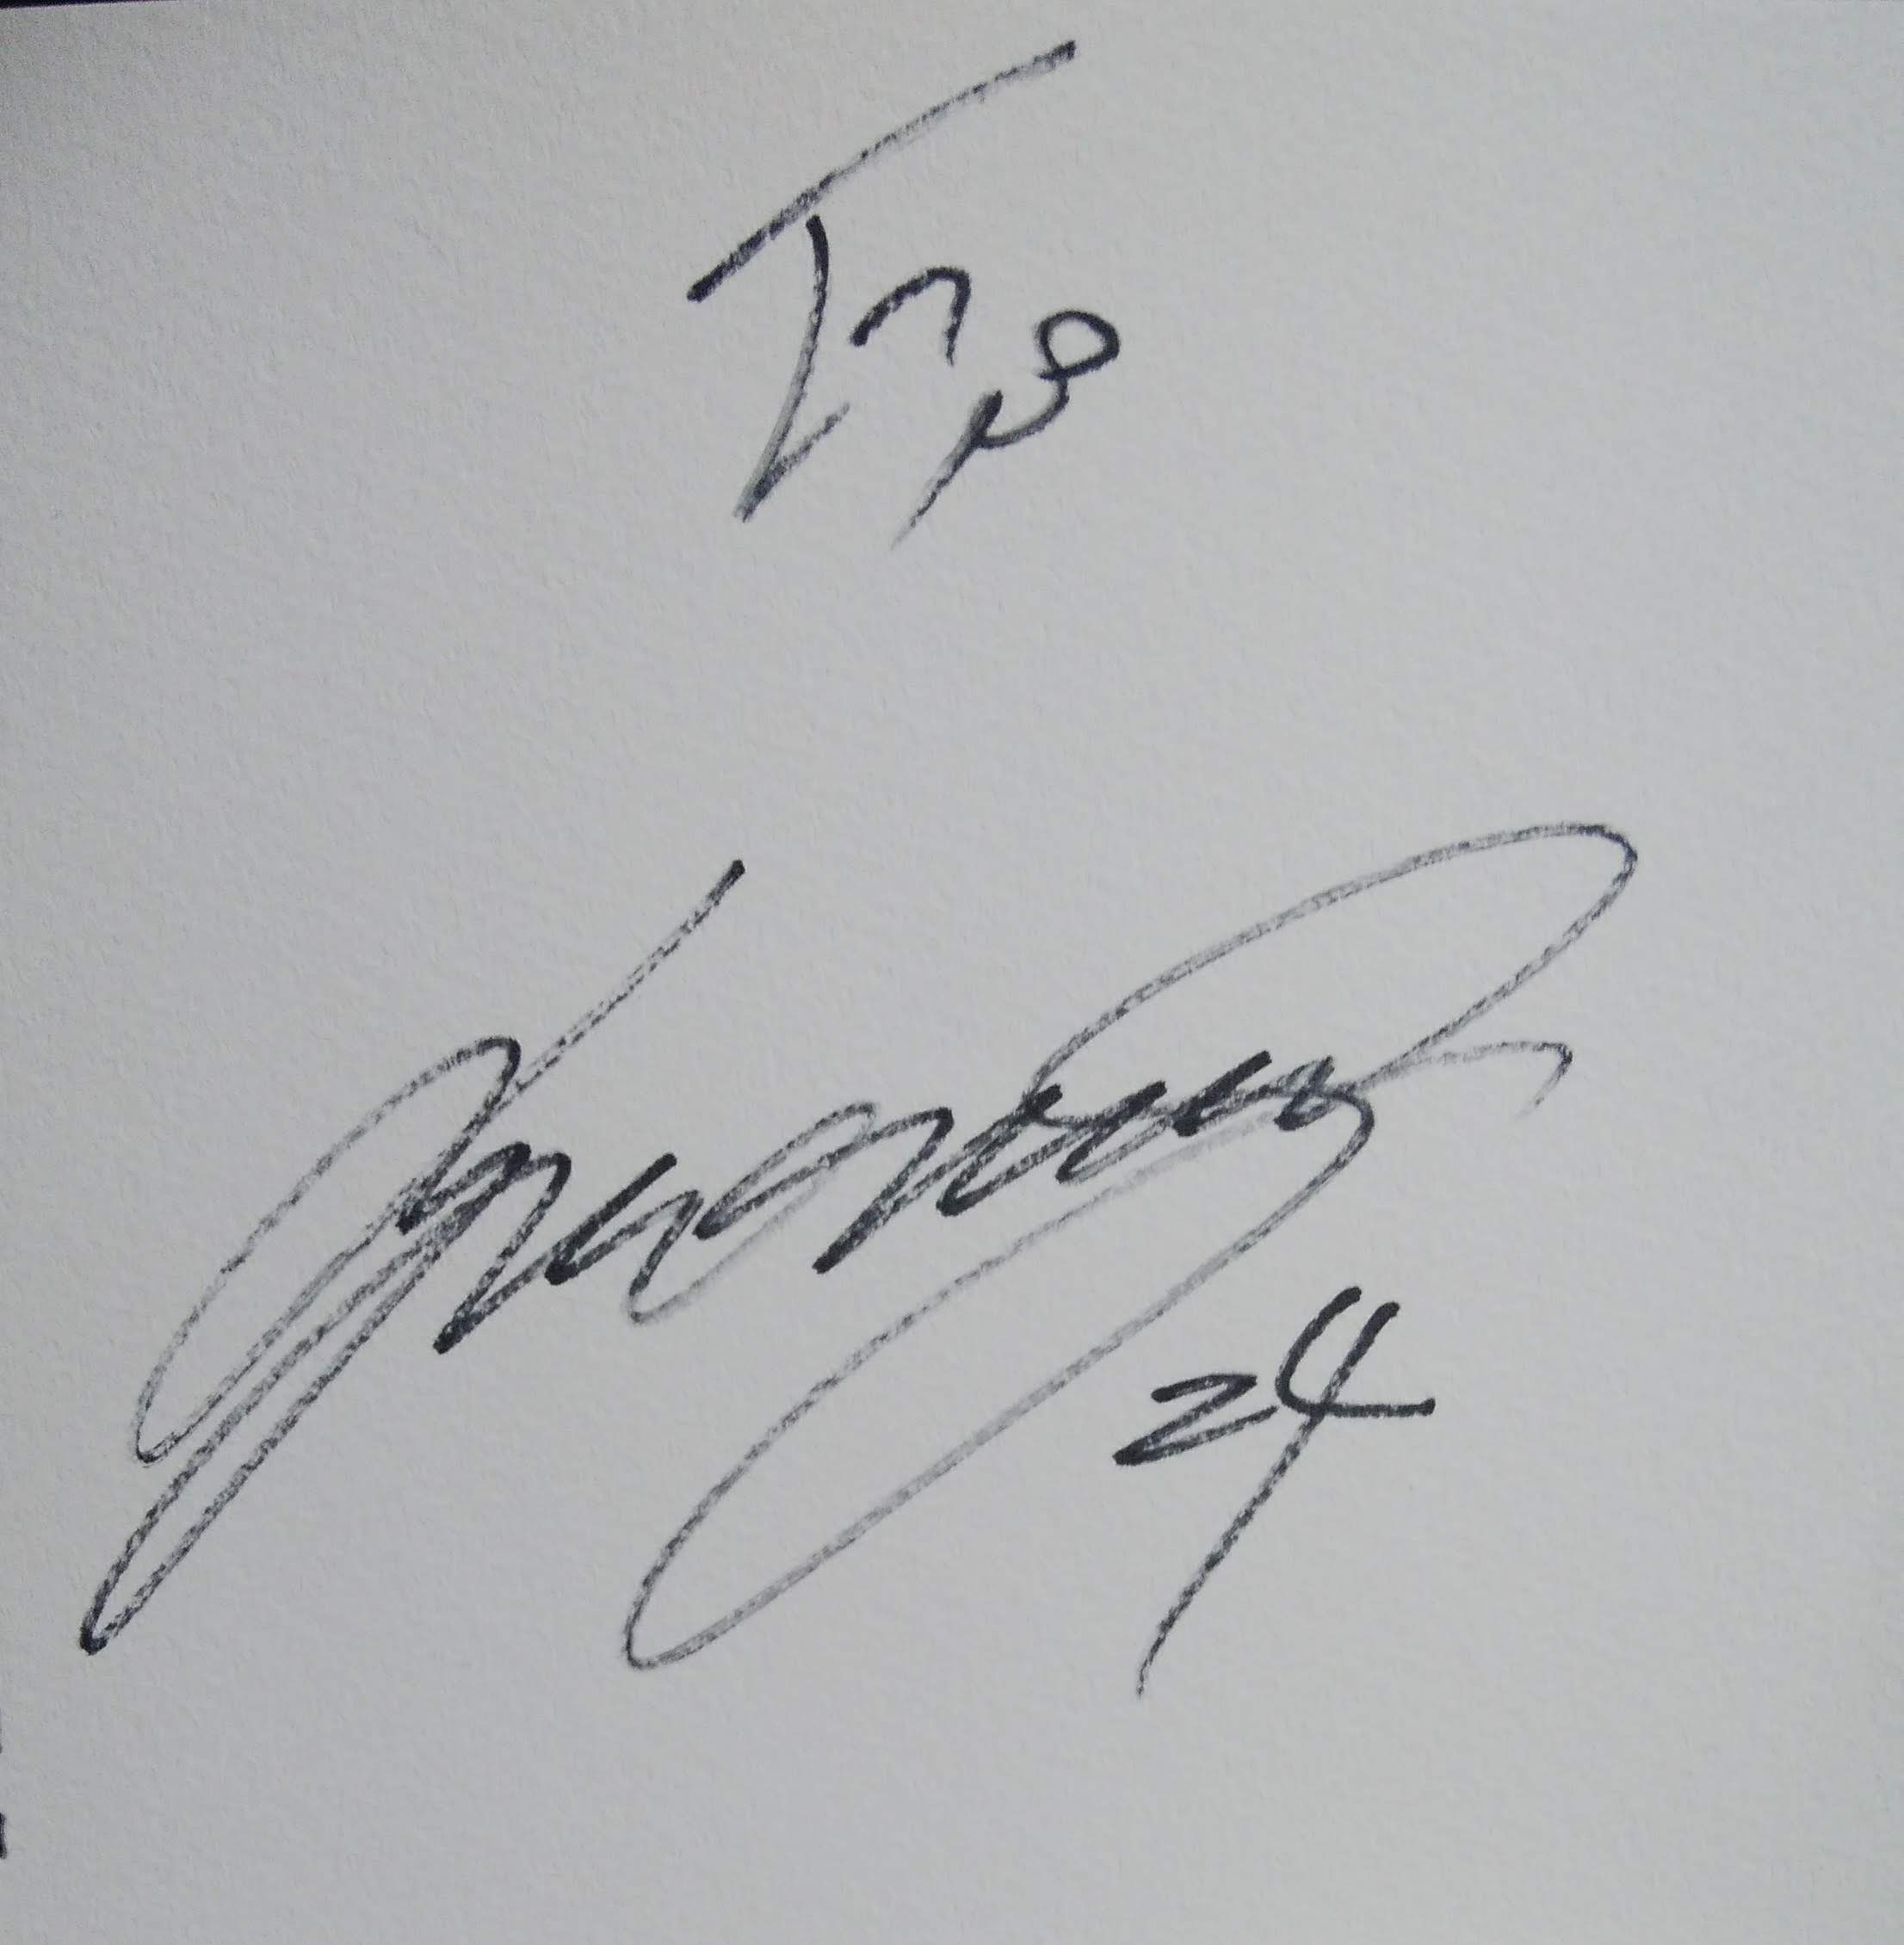 野村佑希選手のサイン「ジェームス」